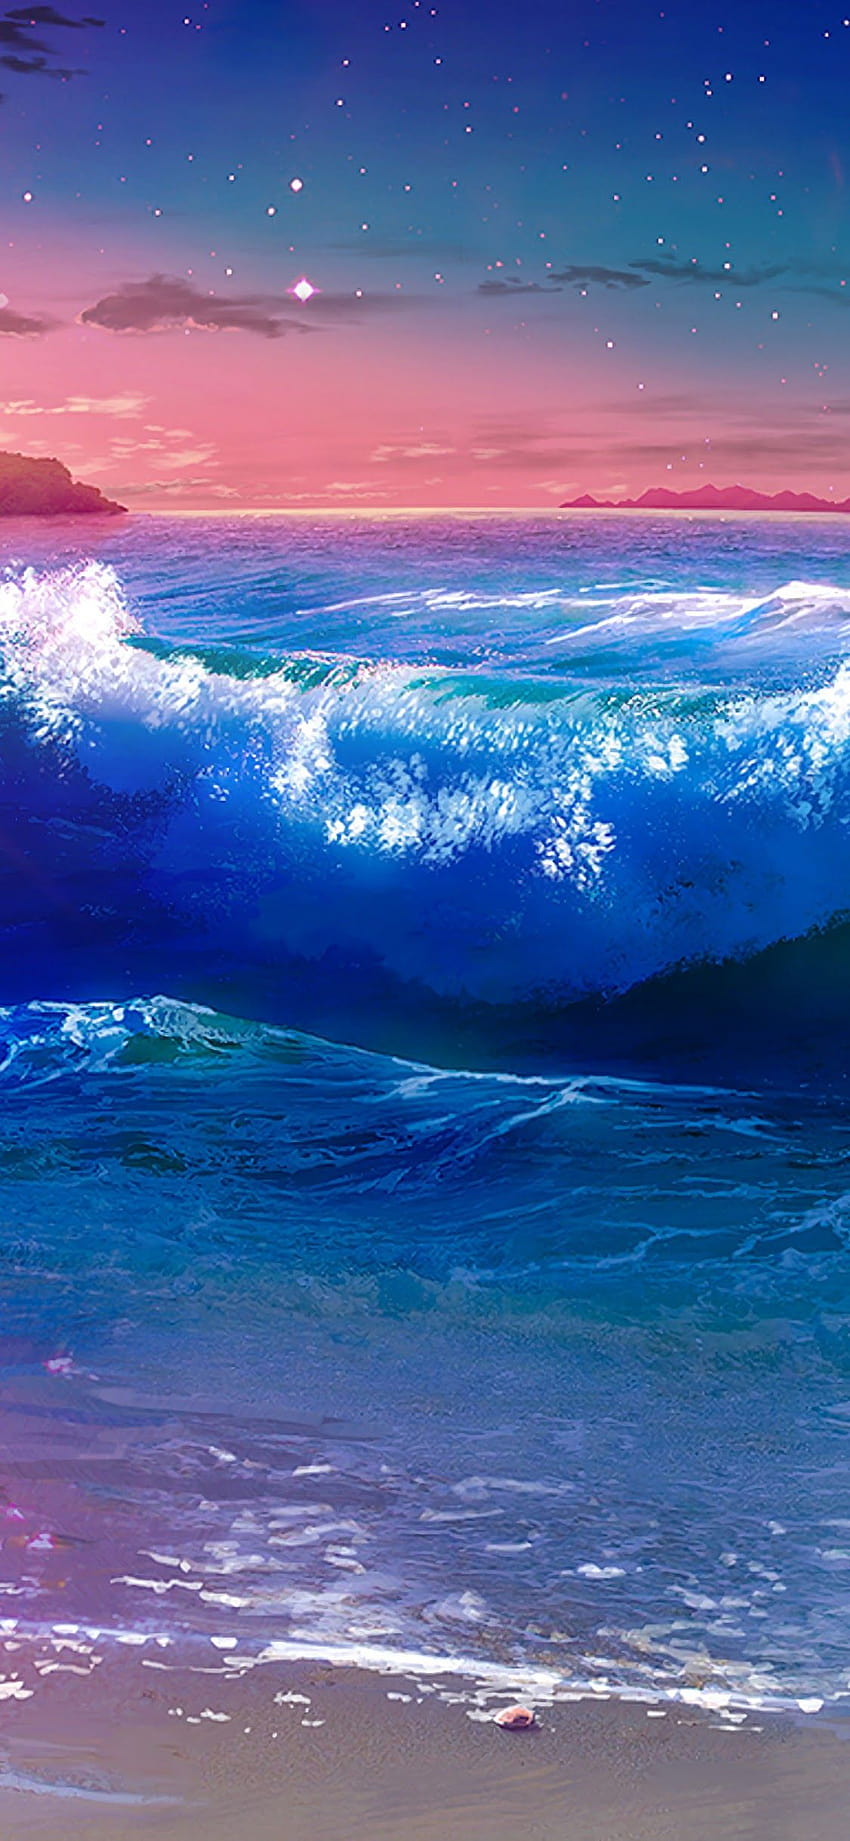 Bạn là fan của Anime và yêu thích cảnh biển hoàng hôn? Hãy xem ngay bộ ảnh hình nền Anime bãi biển hoàng hôn với sóng biển cho iPhone. Với những bức ảnh tuyệt đẹp, bạn sẽ cảm nhận được sự tĩnh lặng, bình yên và tuyệt đẹp của bãi biển. Tải ngay để trải nghiệm. 